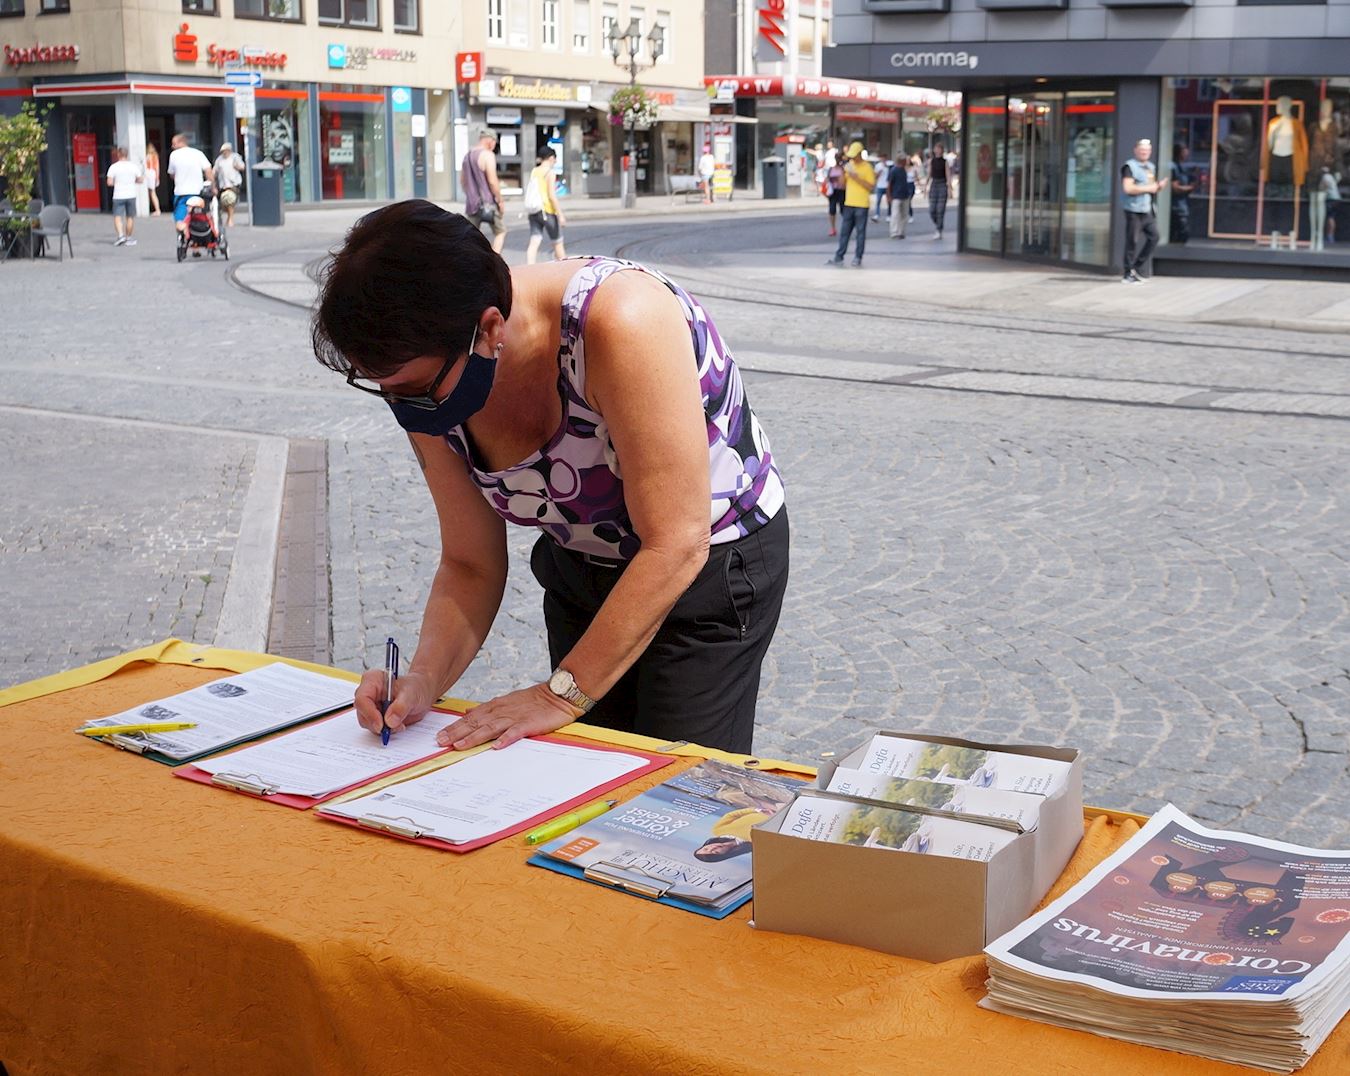 Image for article Allemagne : Les gens de Würzburg soutiennent les efforts des pratiquants pour révéler la persécution du Falun Gong en Chine